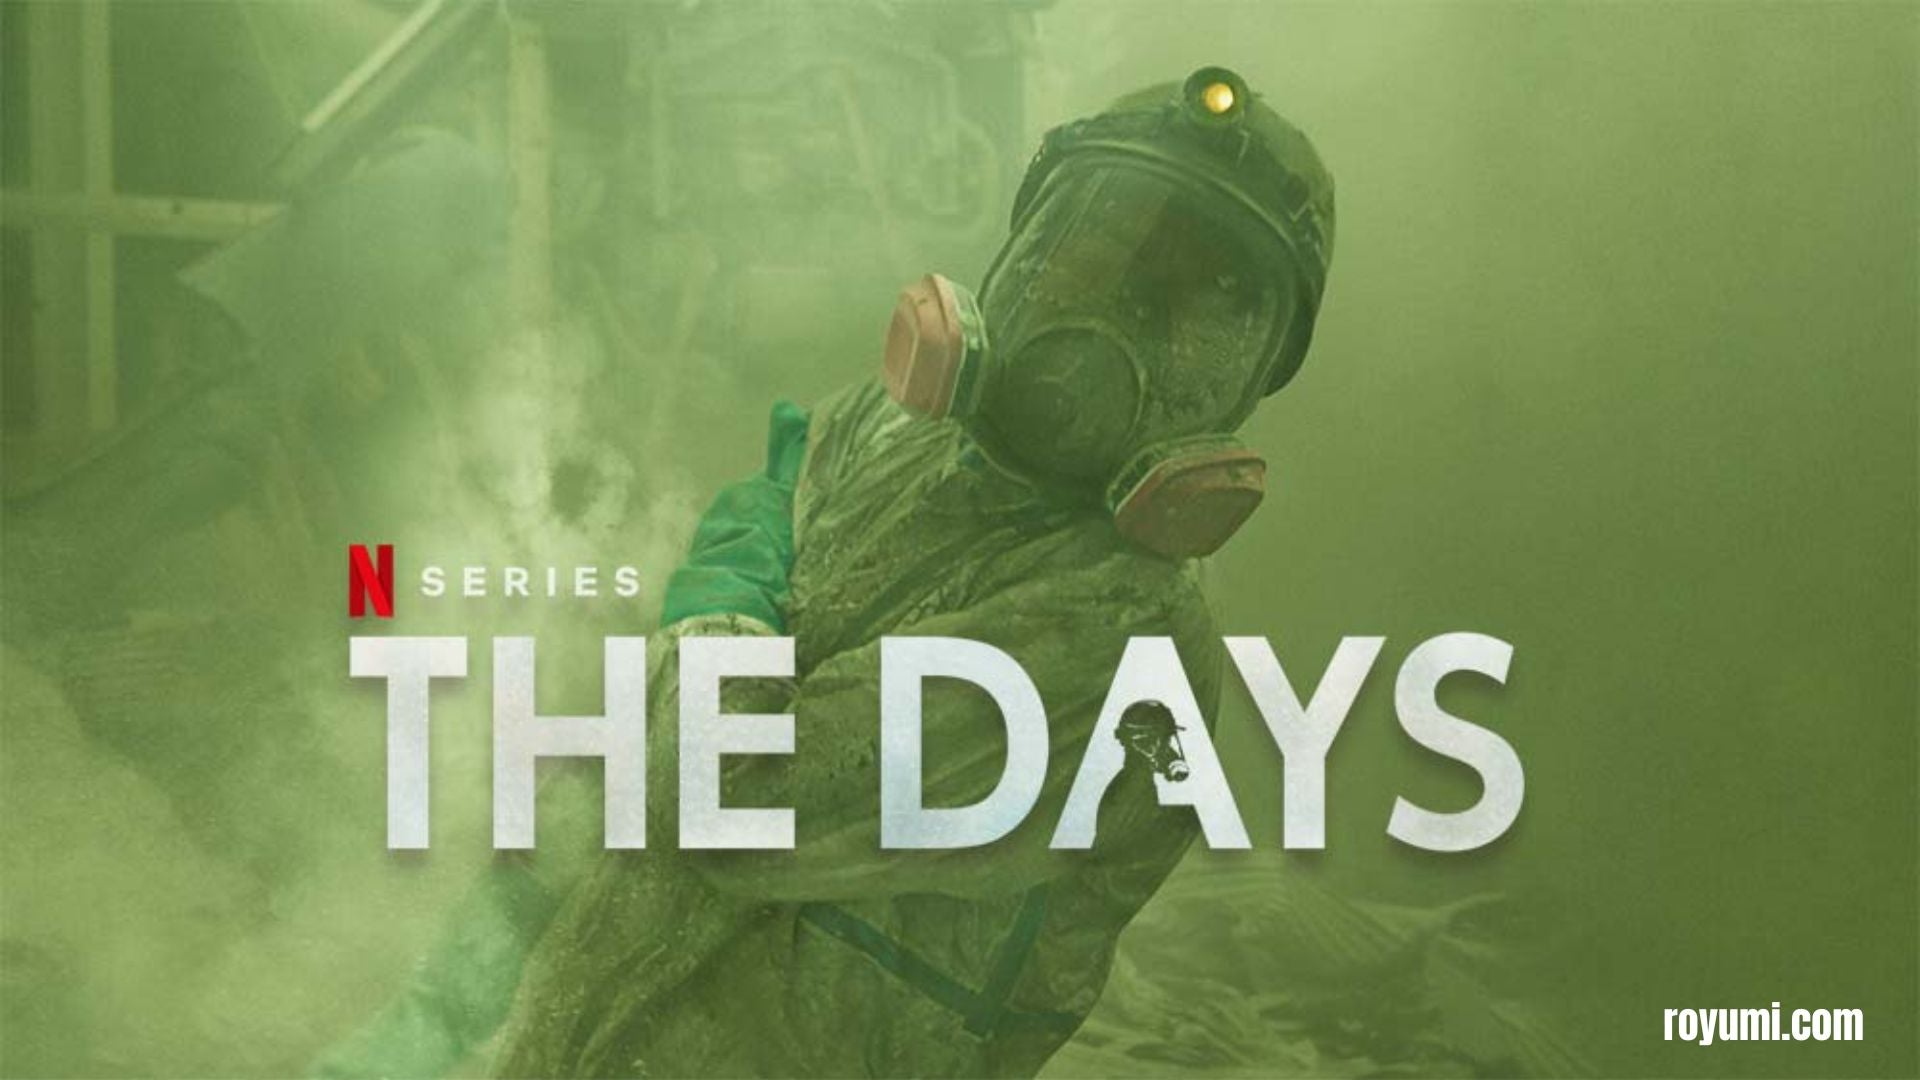 The Days: A captivating series exploring the Fukushima disaster